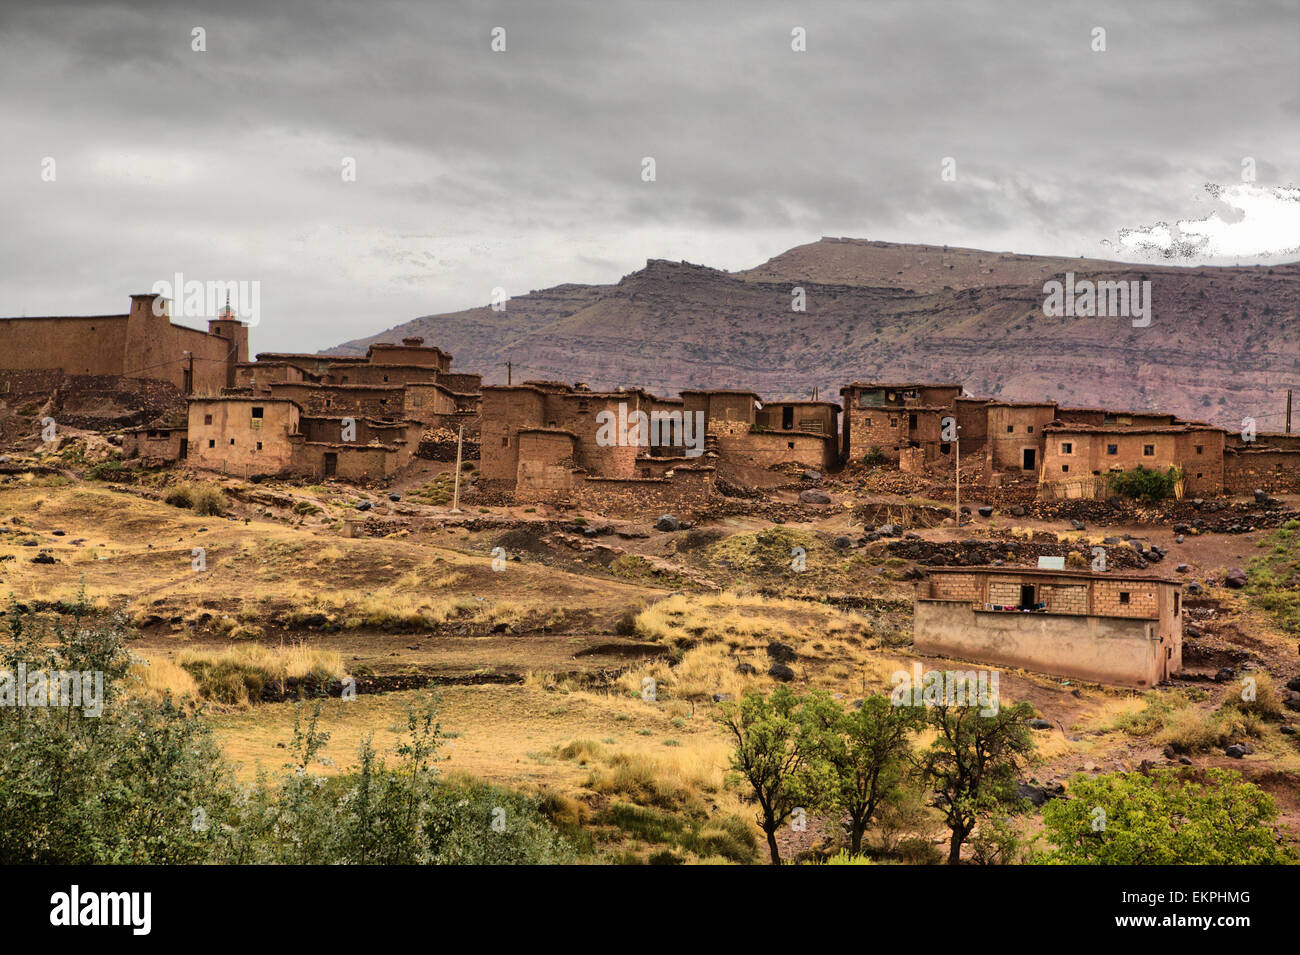 Marocchino villaggio berbero in montagna con terrazza della cultura. Frassineti Fadma Atlas. Ourika Valley, Marocco Foto Stock